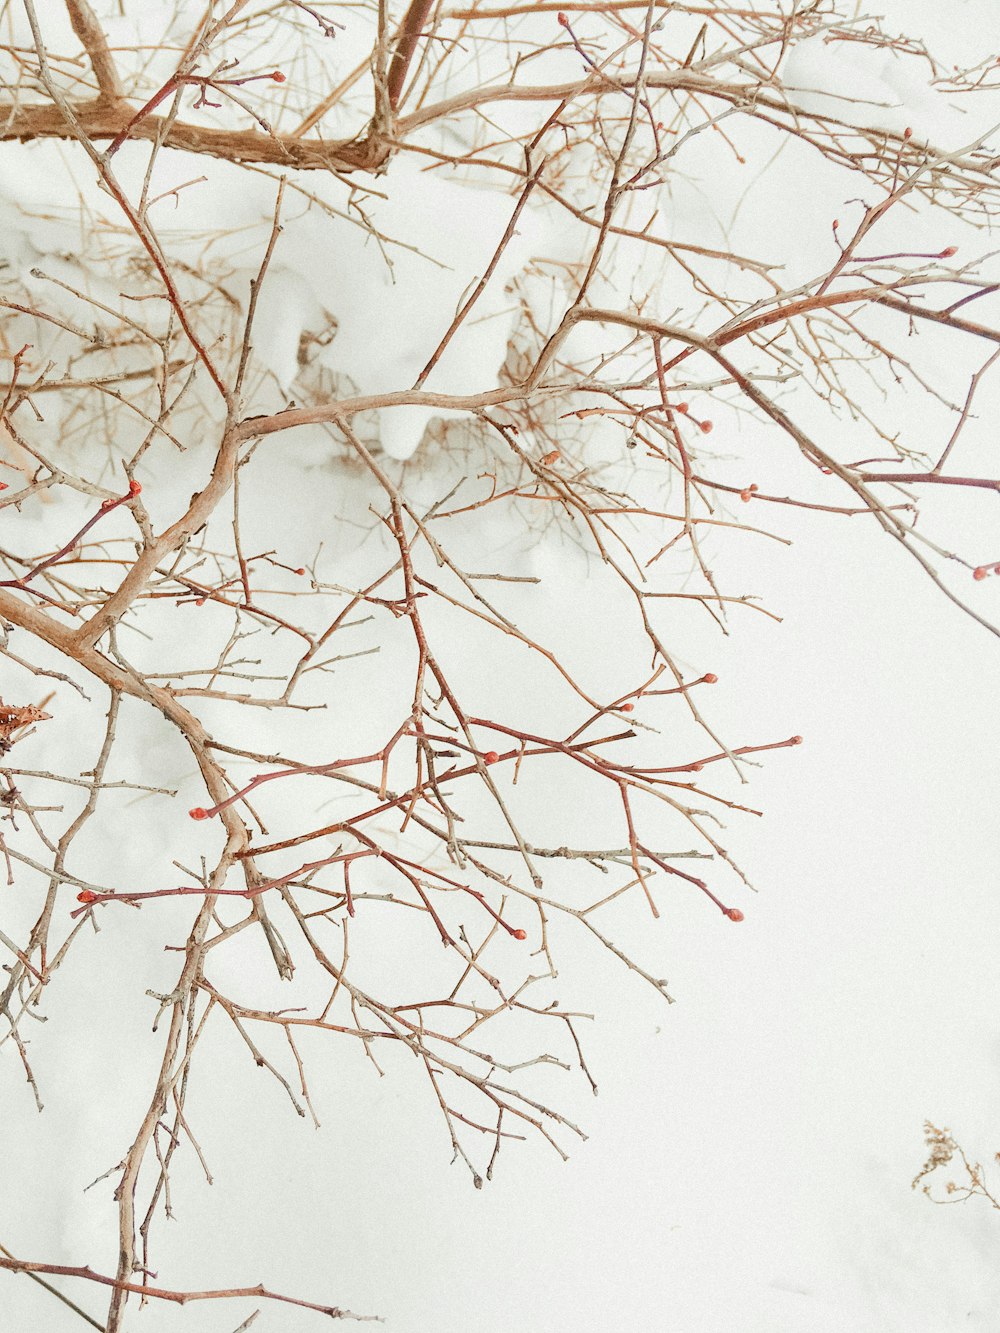 rama de árbol marrón cubierta de nieve blanca